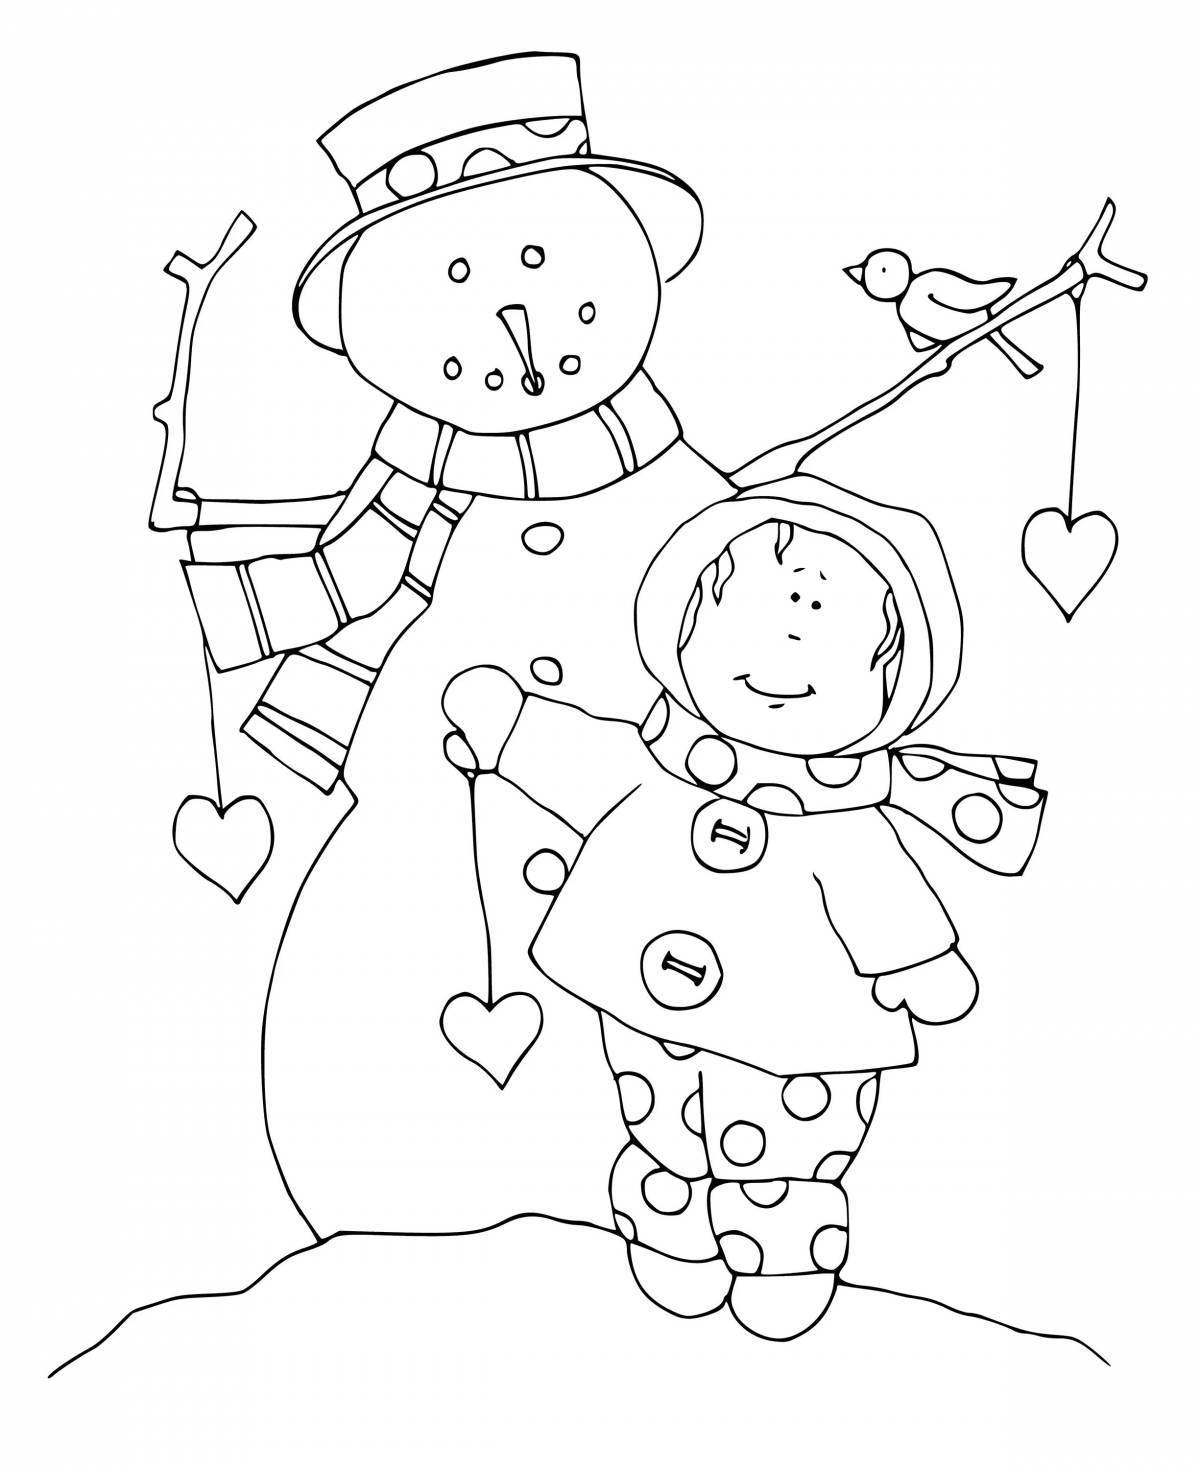 Humorous coloring book snowman